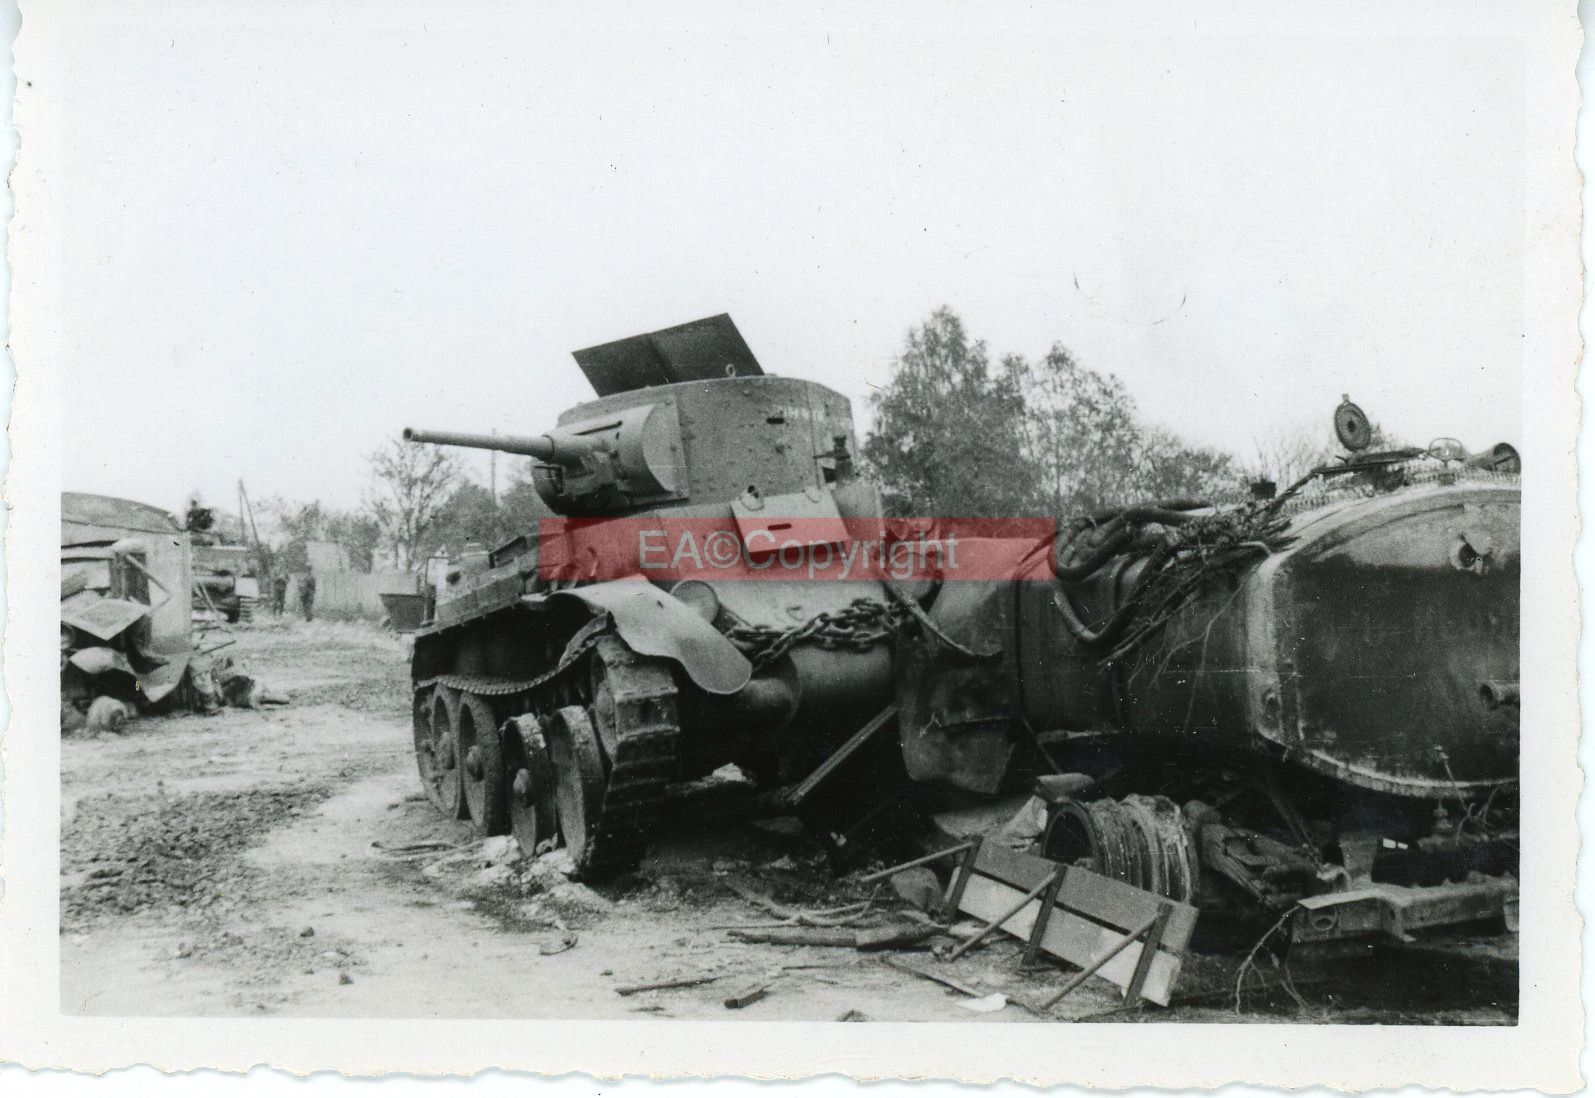 Ркка июнь 1941 г. Дубно 1941 величайшее танковое сражение. Битва за Дубно Луцк Броды 1941. 8 Механизированный корпус 1941. ЗИС-6 подбитый.